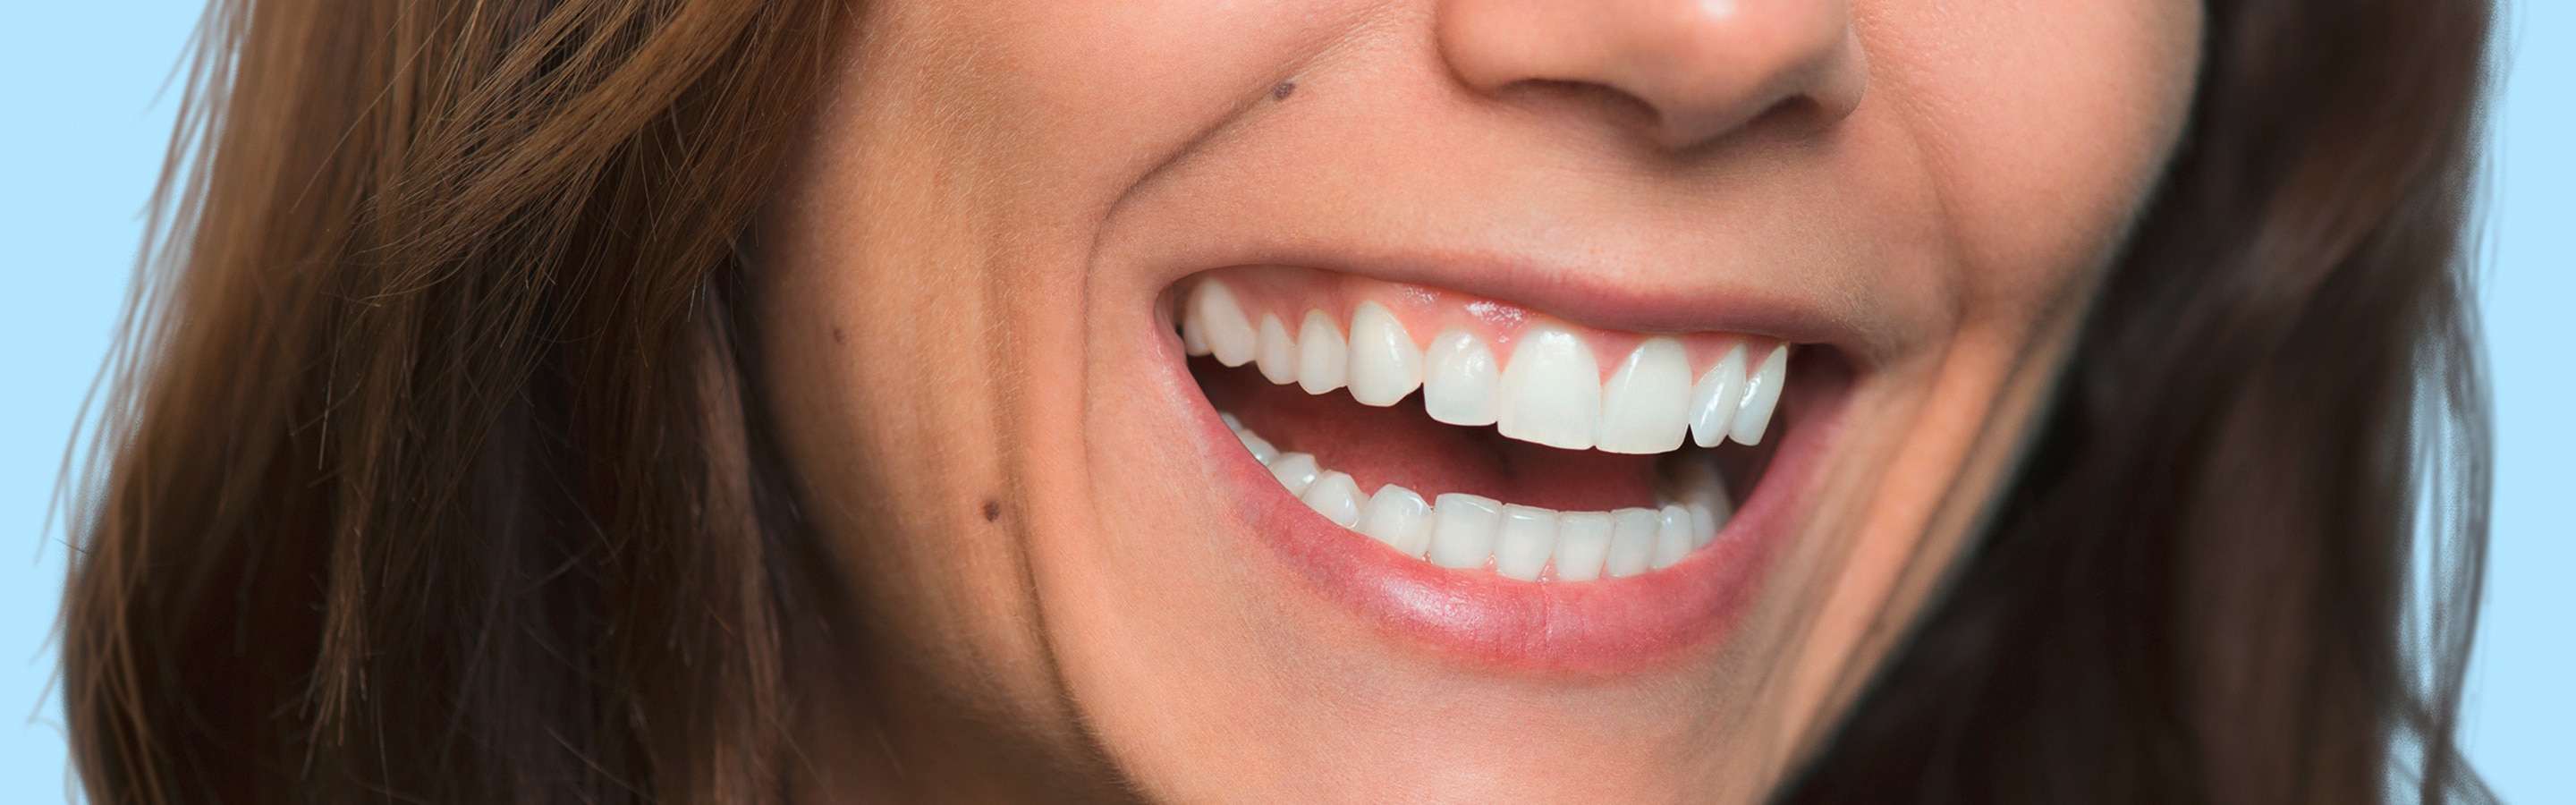 Was sind gute Mundhygiene-Gewohnheiten?